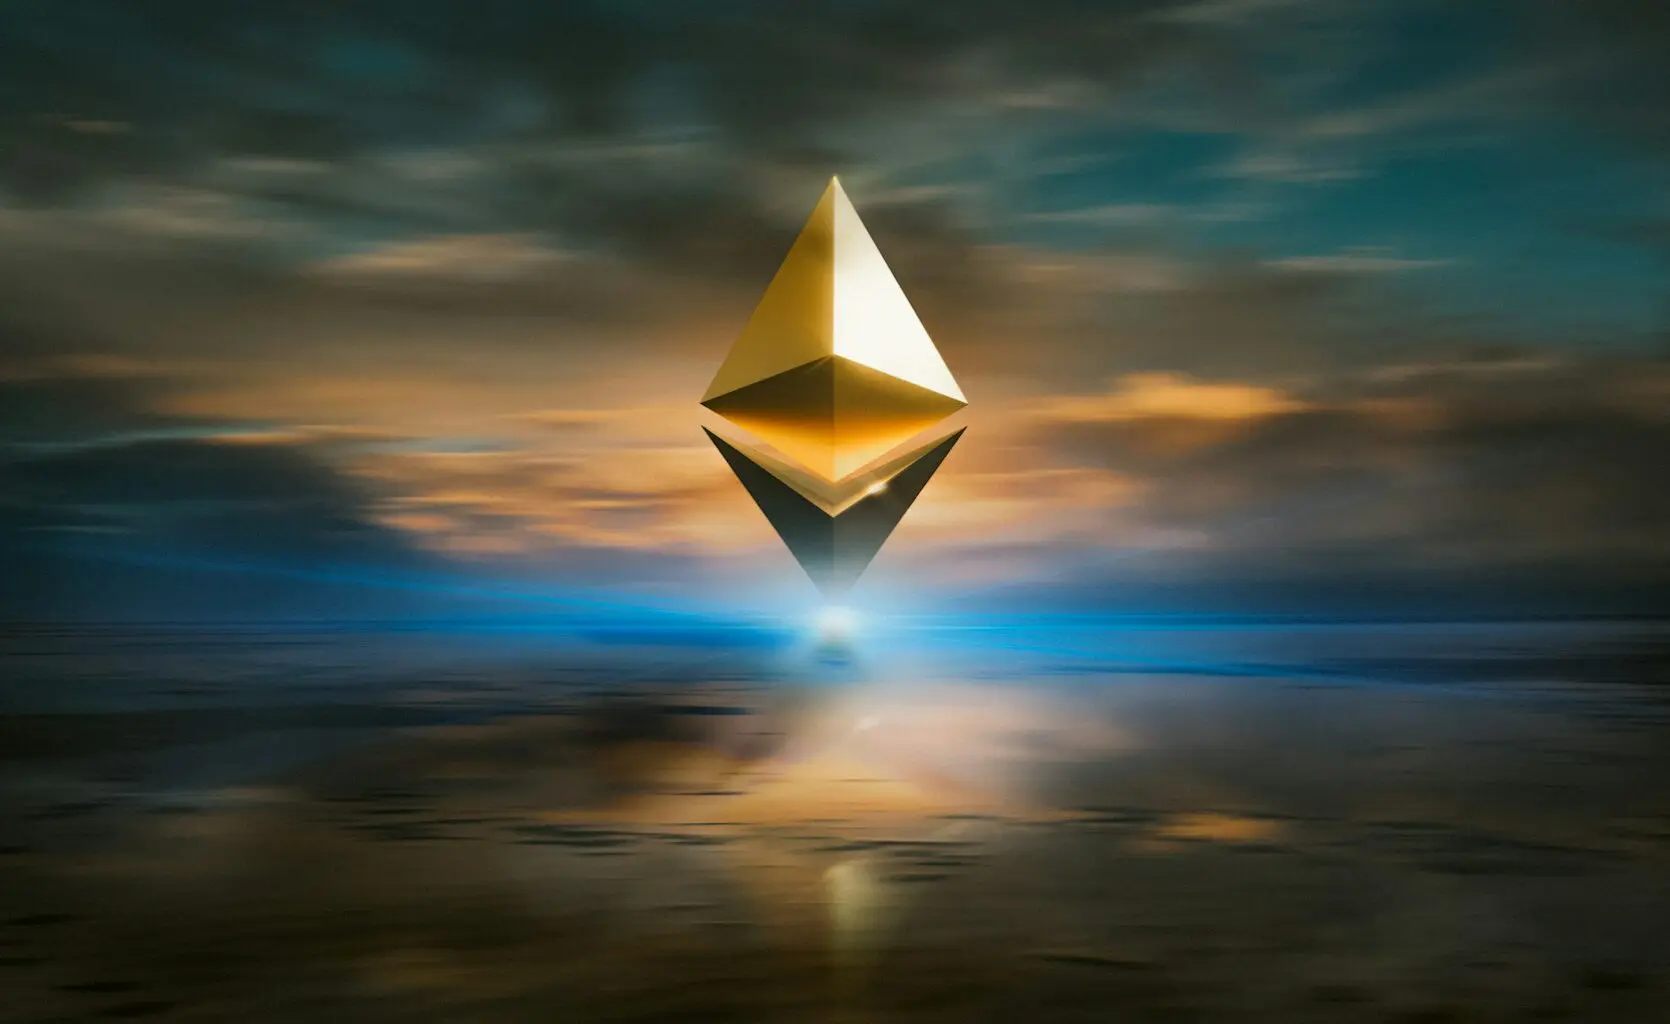 A golden Ethereum logo floating above a blurred landscape at sunset.